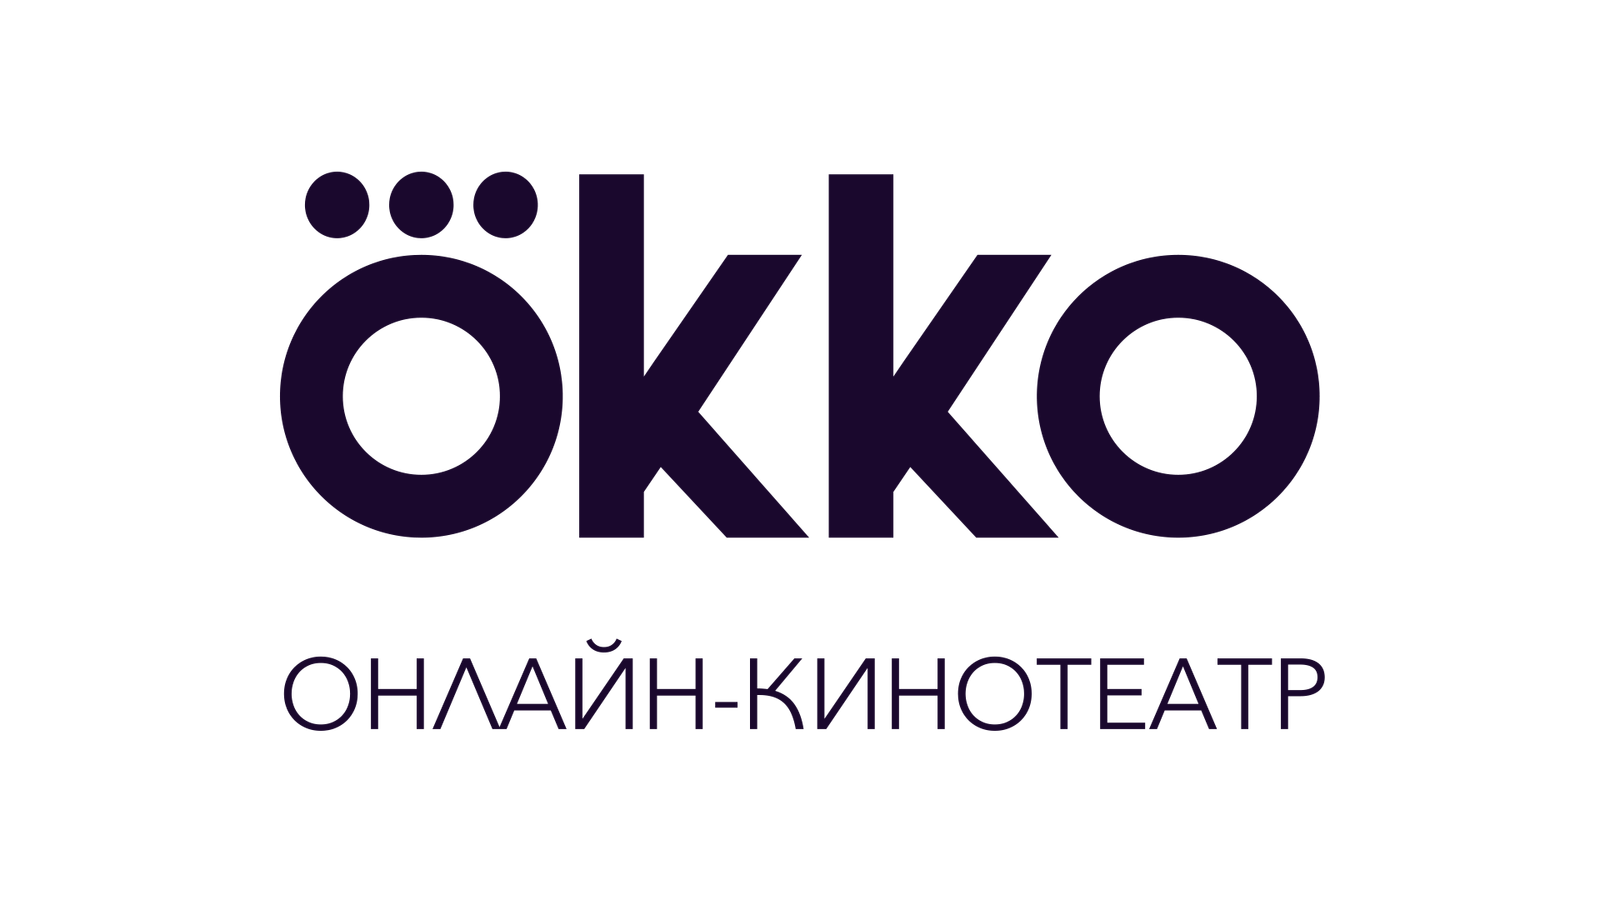 Okko logo